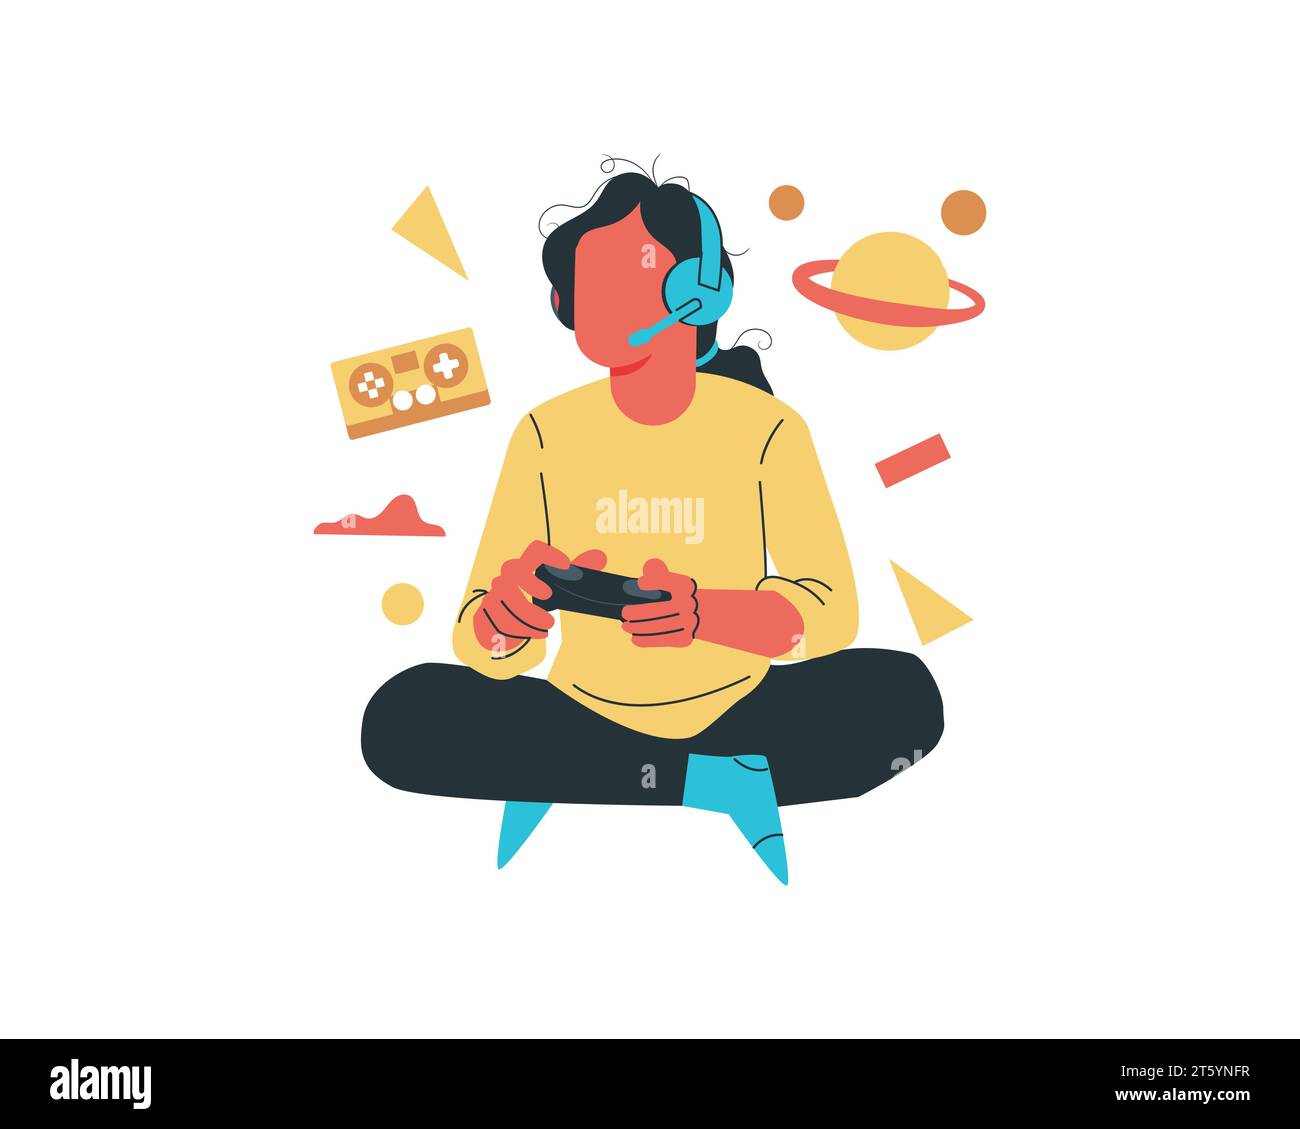 Ein Mädchen, das Videospiele spielt. Vektor-Illustration in flachem Cartoon-Stil. Stock Vektor